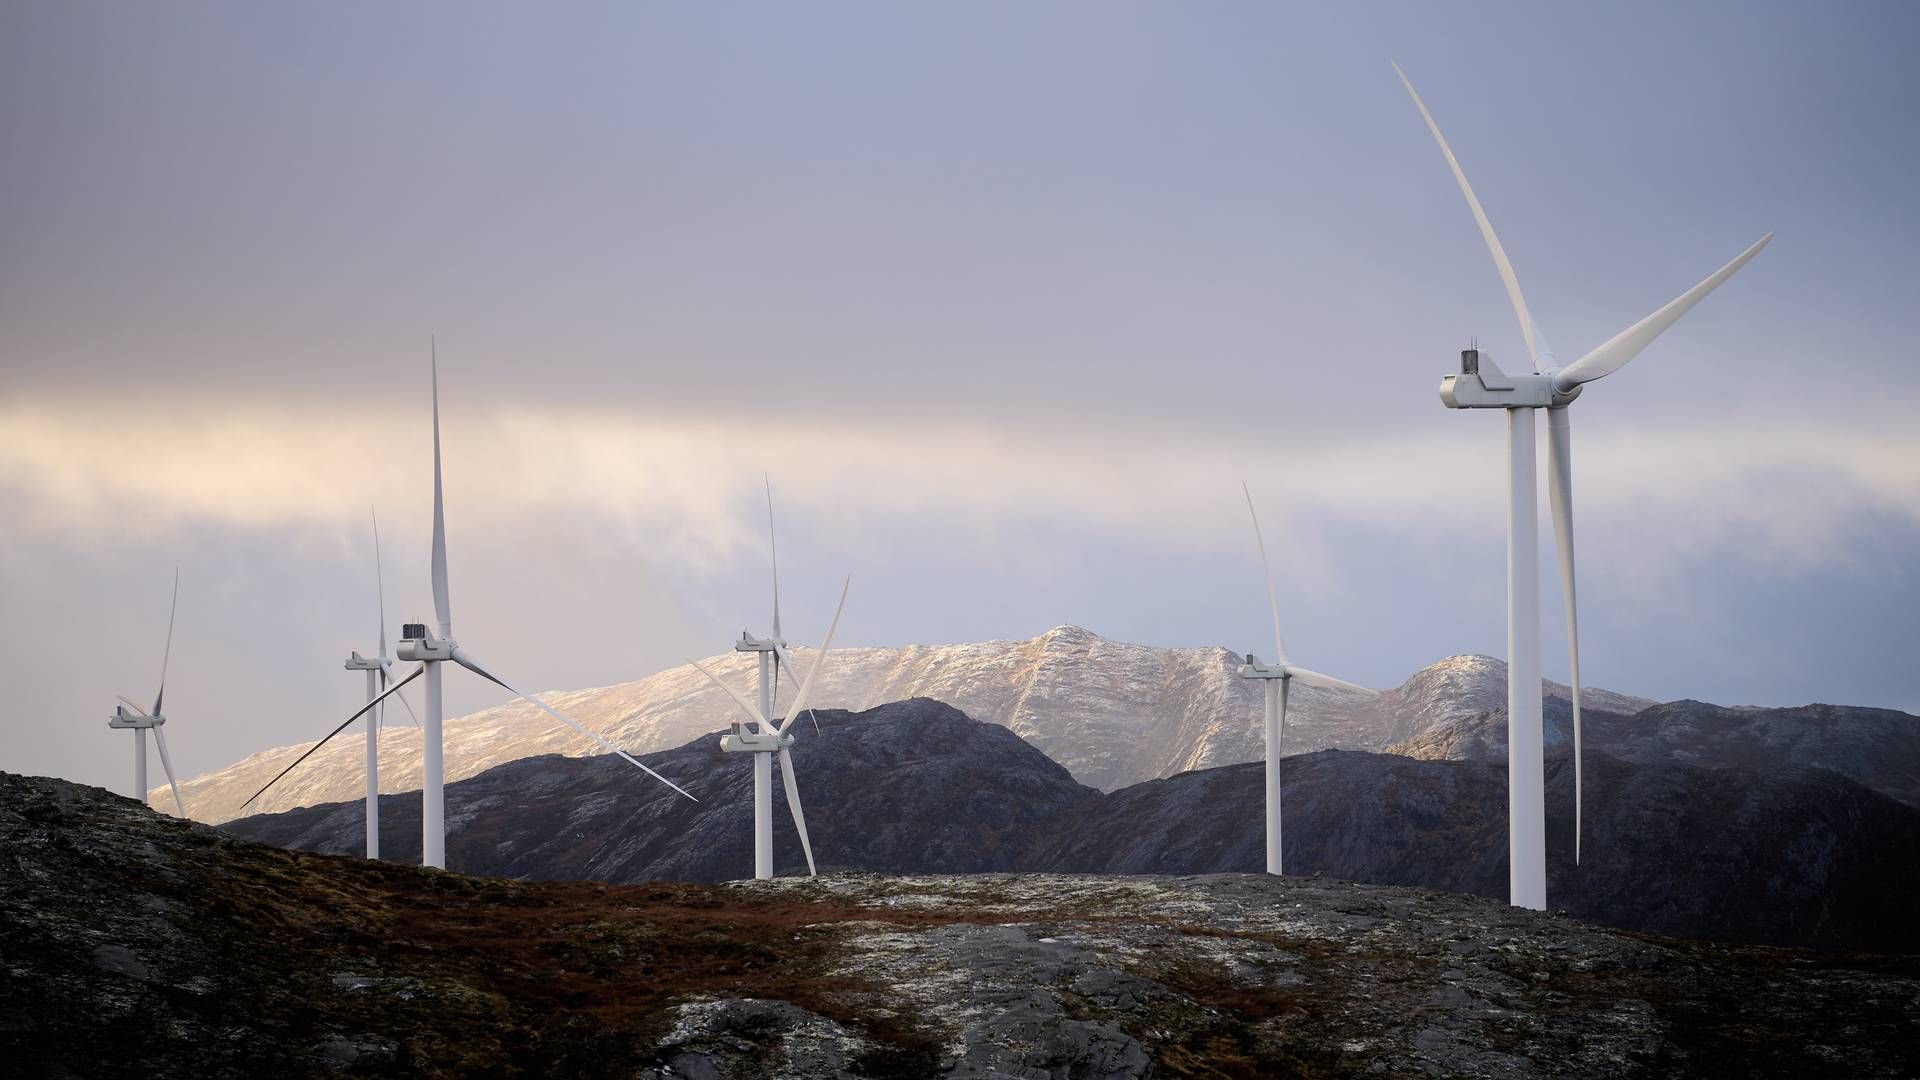 65 PROSENT: Utenlandske selskaper eier 65 prosent av norsk vindkraft. | Foto: Ole Martin Wold / NTB